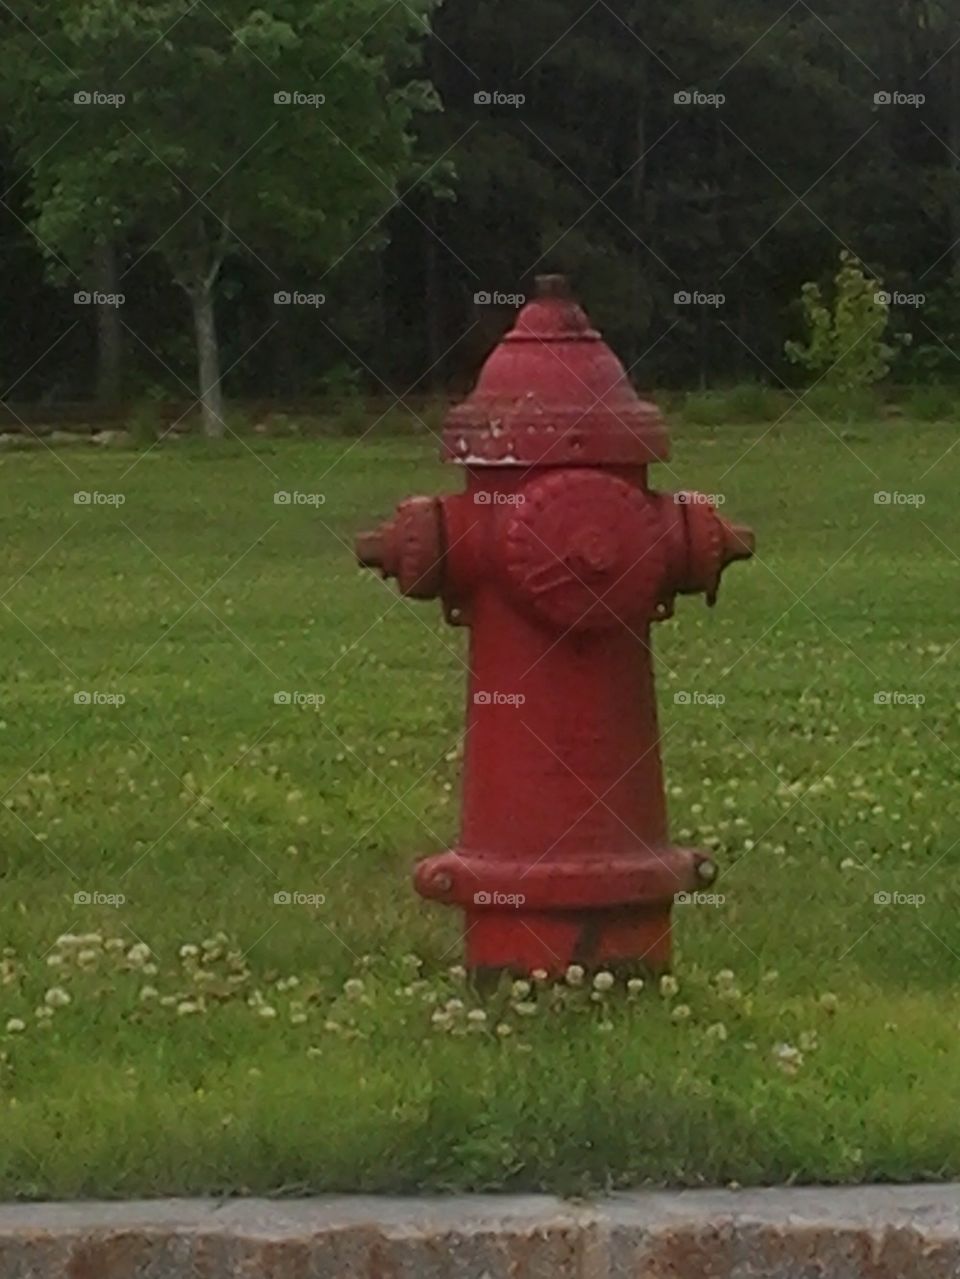 fire hydrent